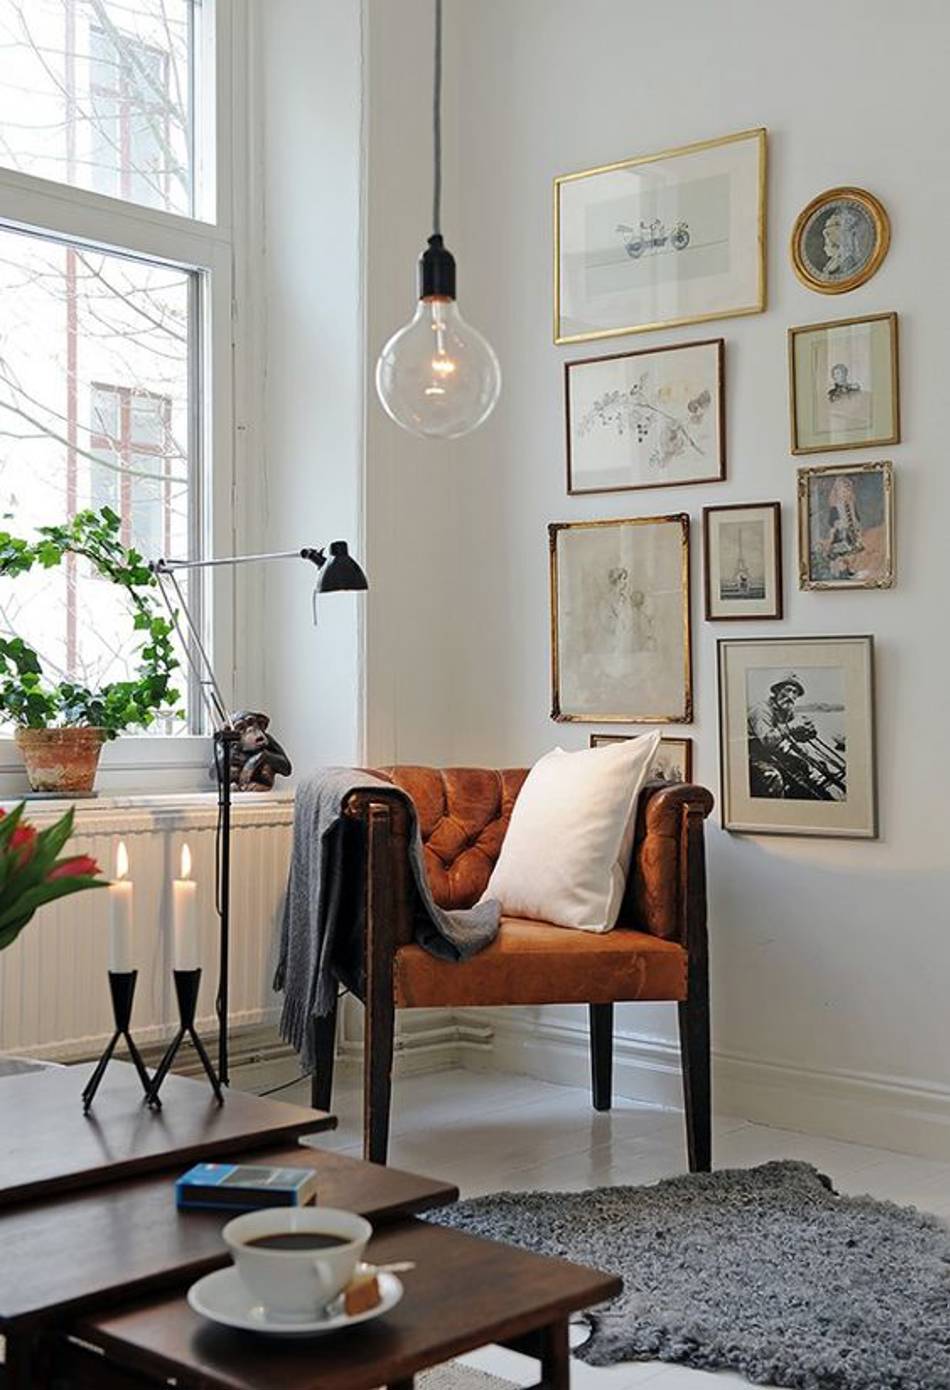 De mooiste manieren om zelf lichtpeertjes in je interieur te verwerken -  Desso Tarkett